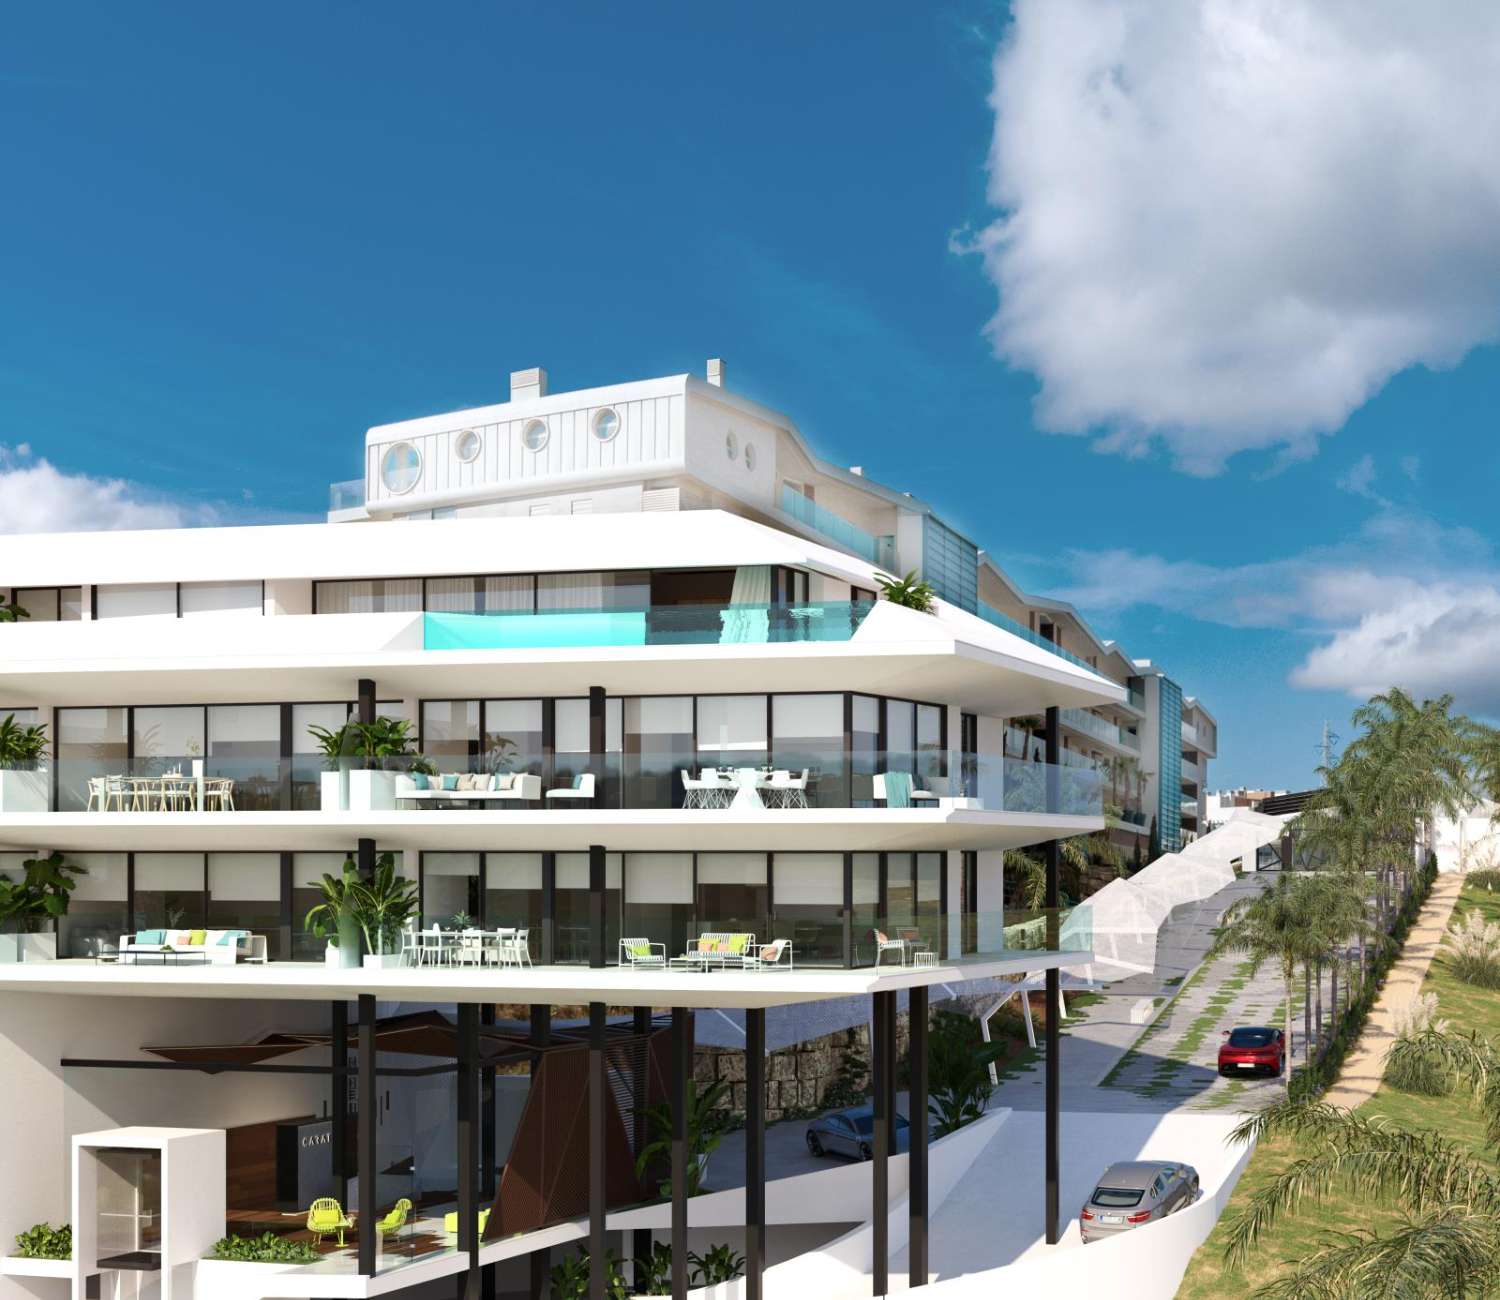 Espectacular ático de 3 dormitorios con calidades de lujo y vistas del mar, terraza de 60 metros